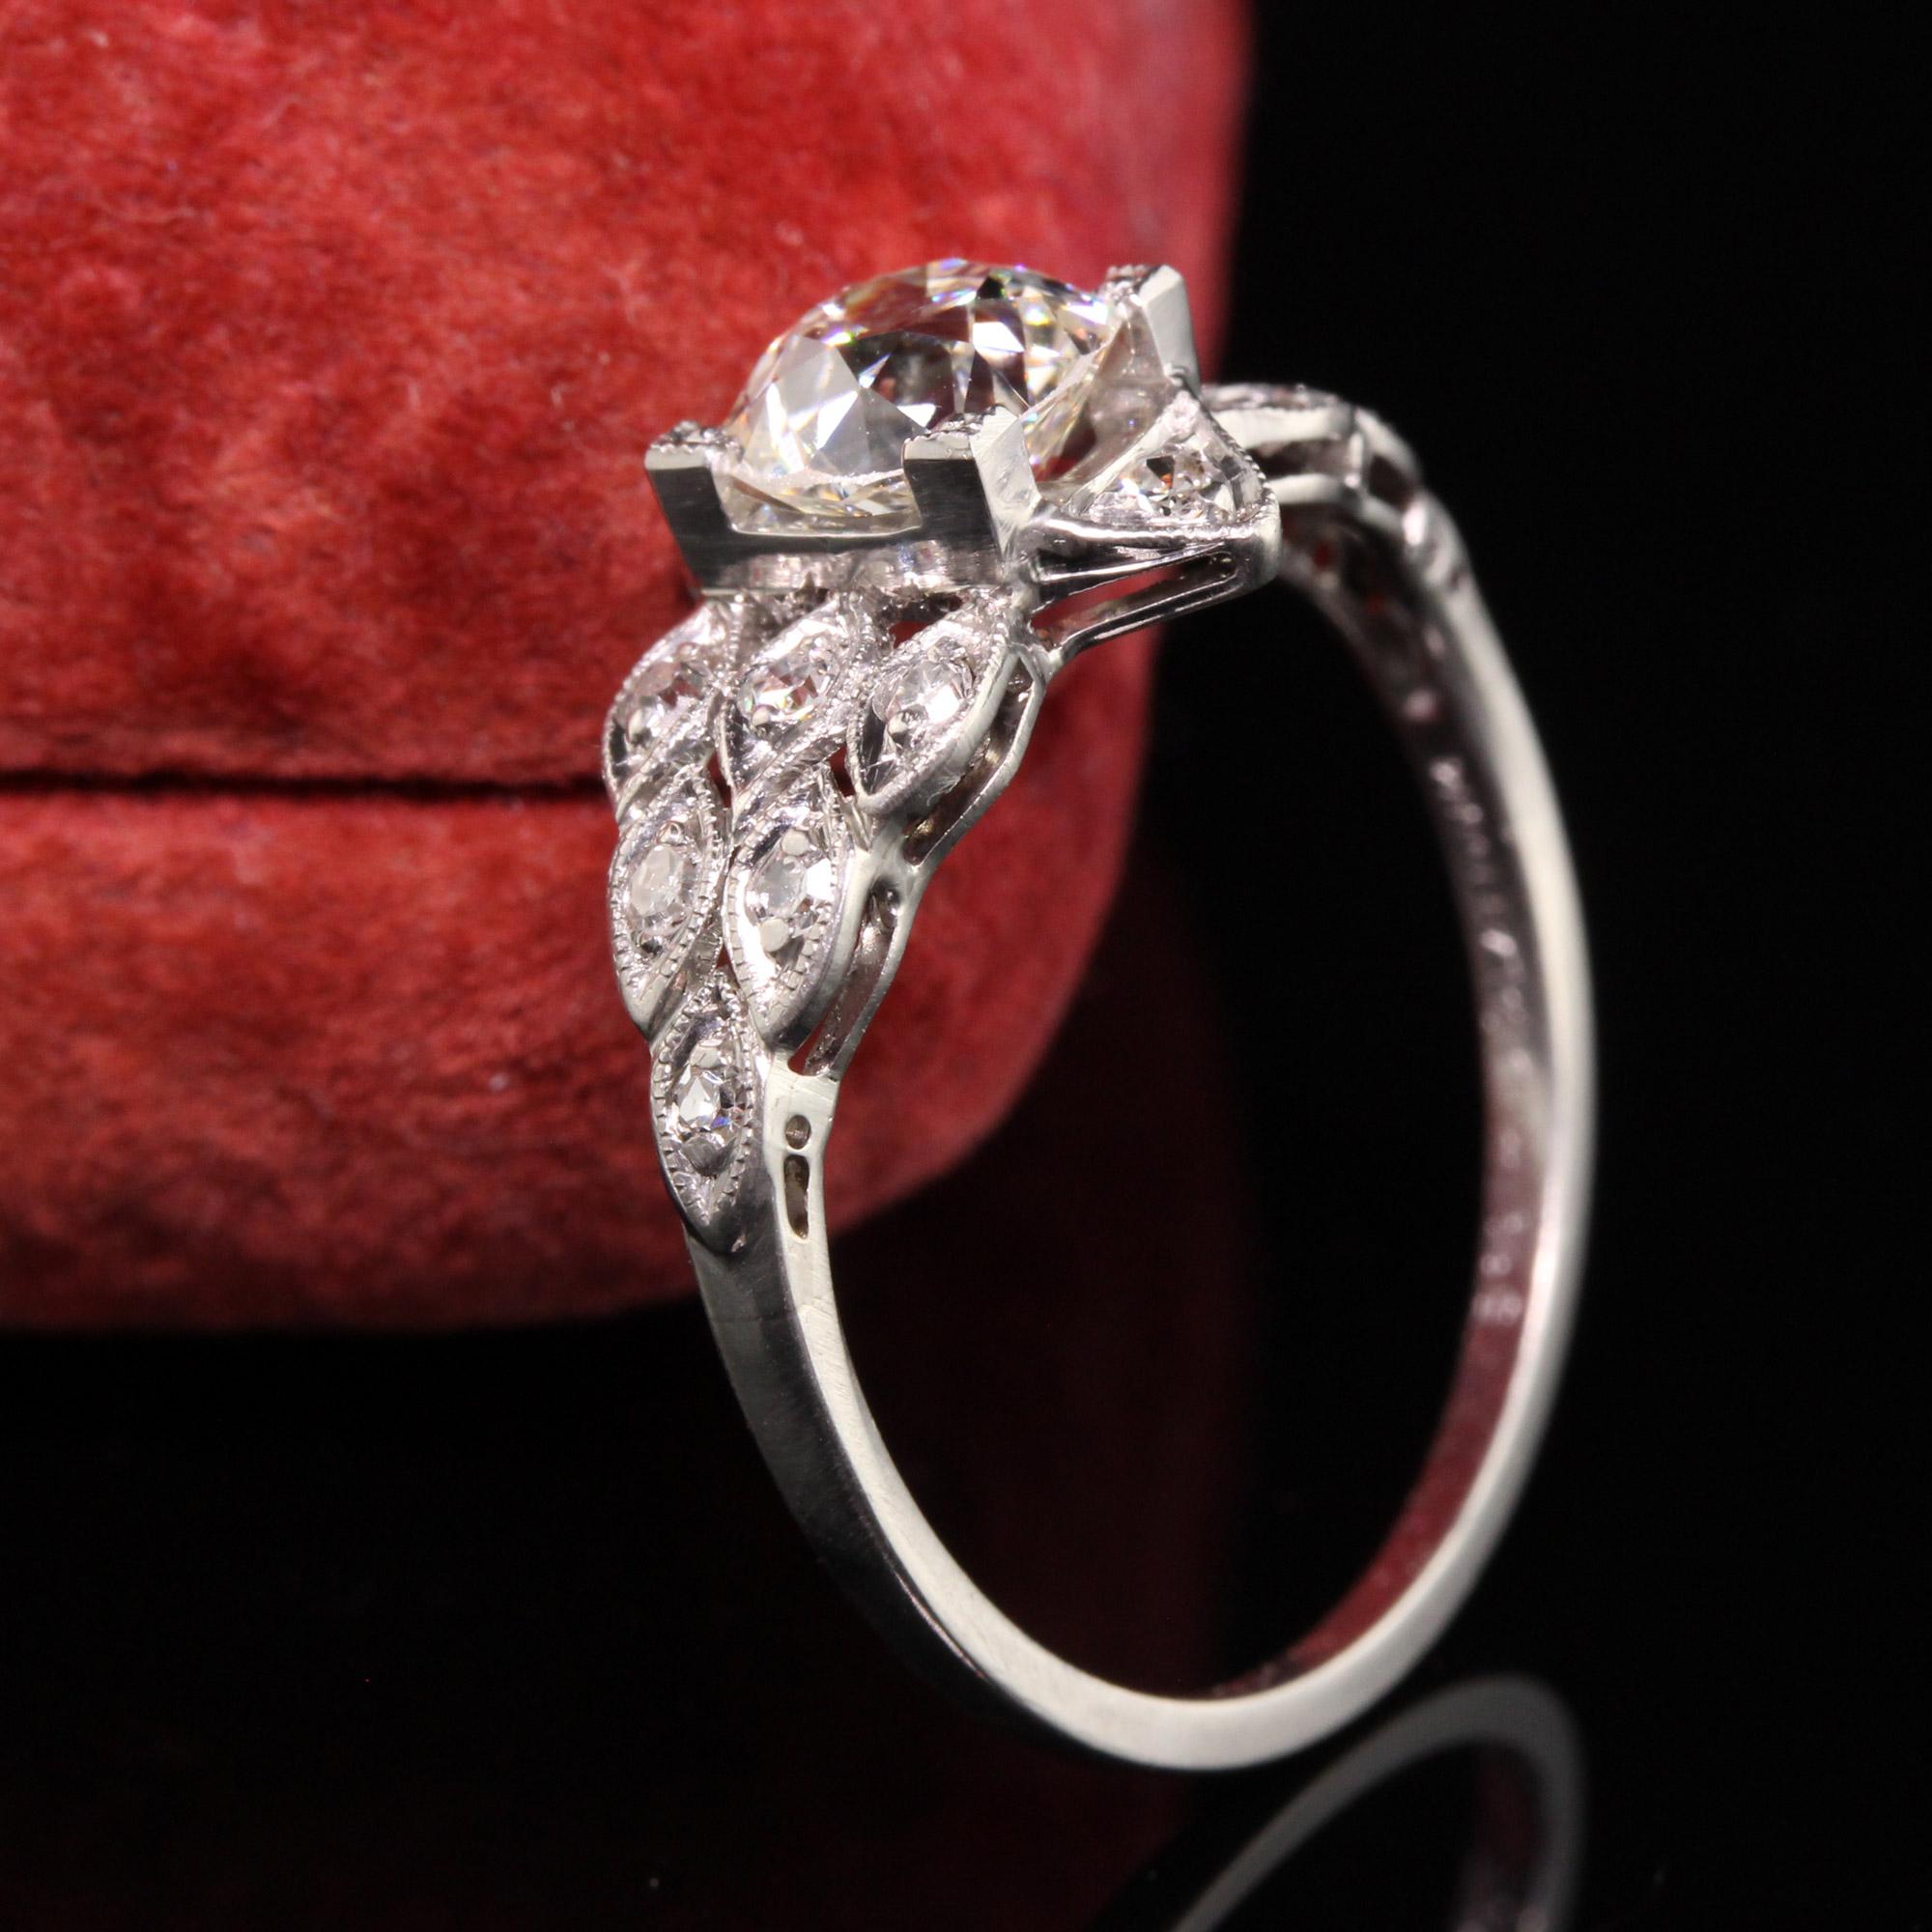 Schöner antiker Art Deco Platin Old Mine Cut Diamant Verlobungsring. Dieser schöne Art-Deco-Diamant-Verlobungsring verfügt über einen wunderschönen Diamanten mit altem Minenschliff in der Mitte einer schönen Art-Deco-Fassung mit einzelnen